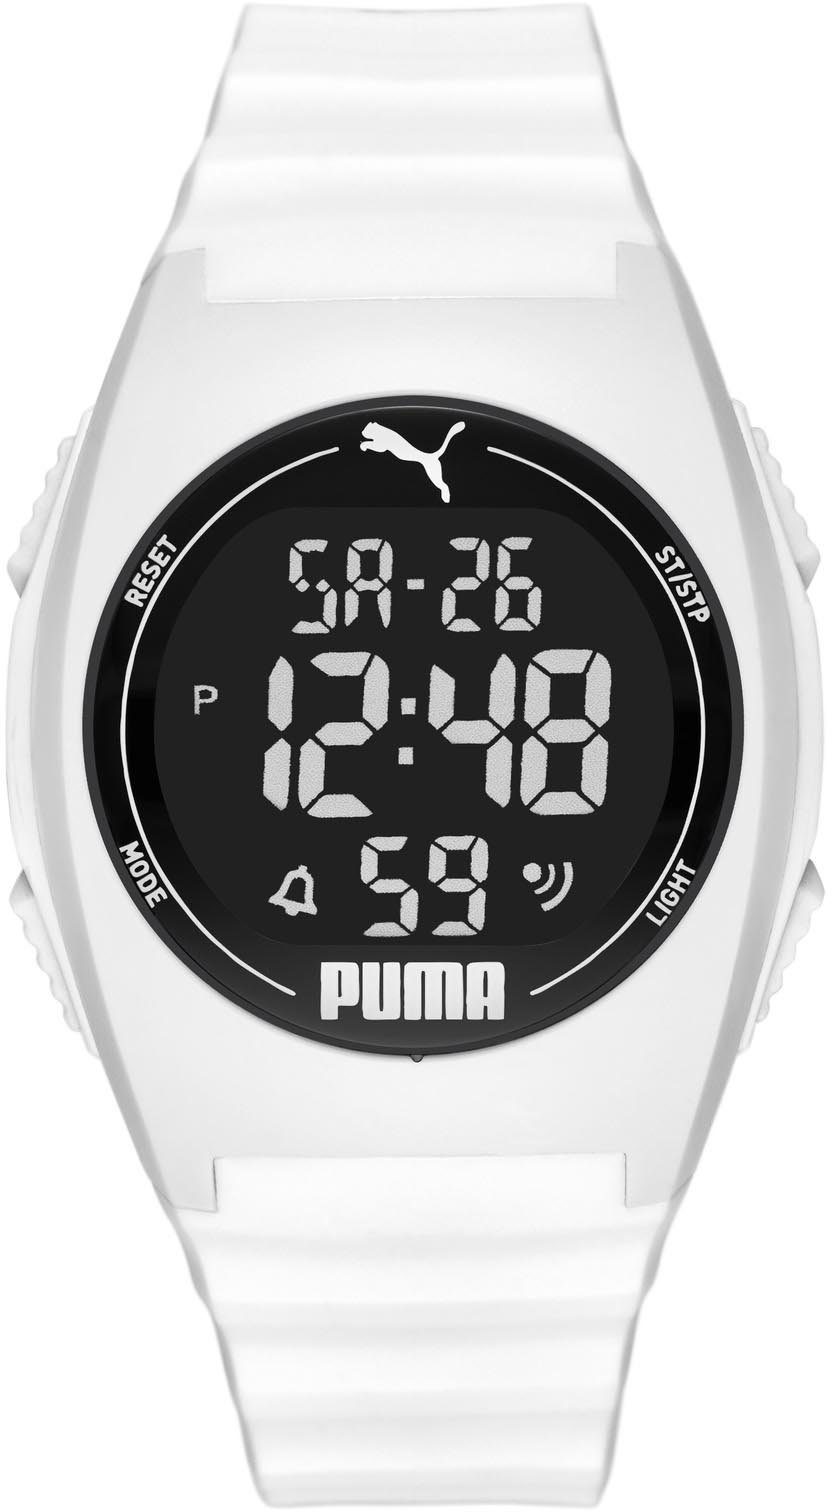 PUMA Digitaluhr »PUMA 4, P6012« online kaufen | OTTO